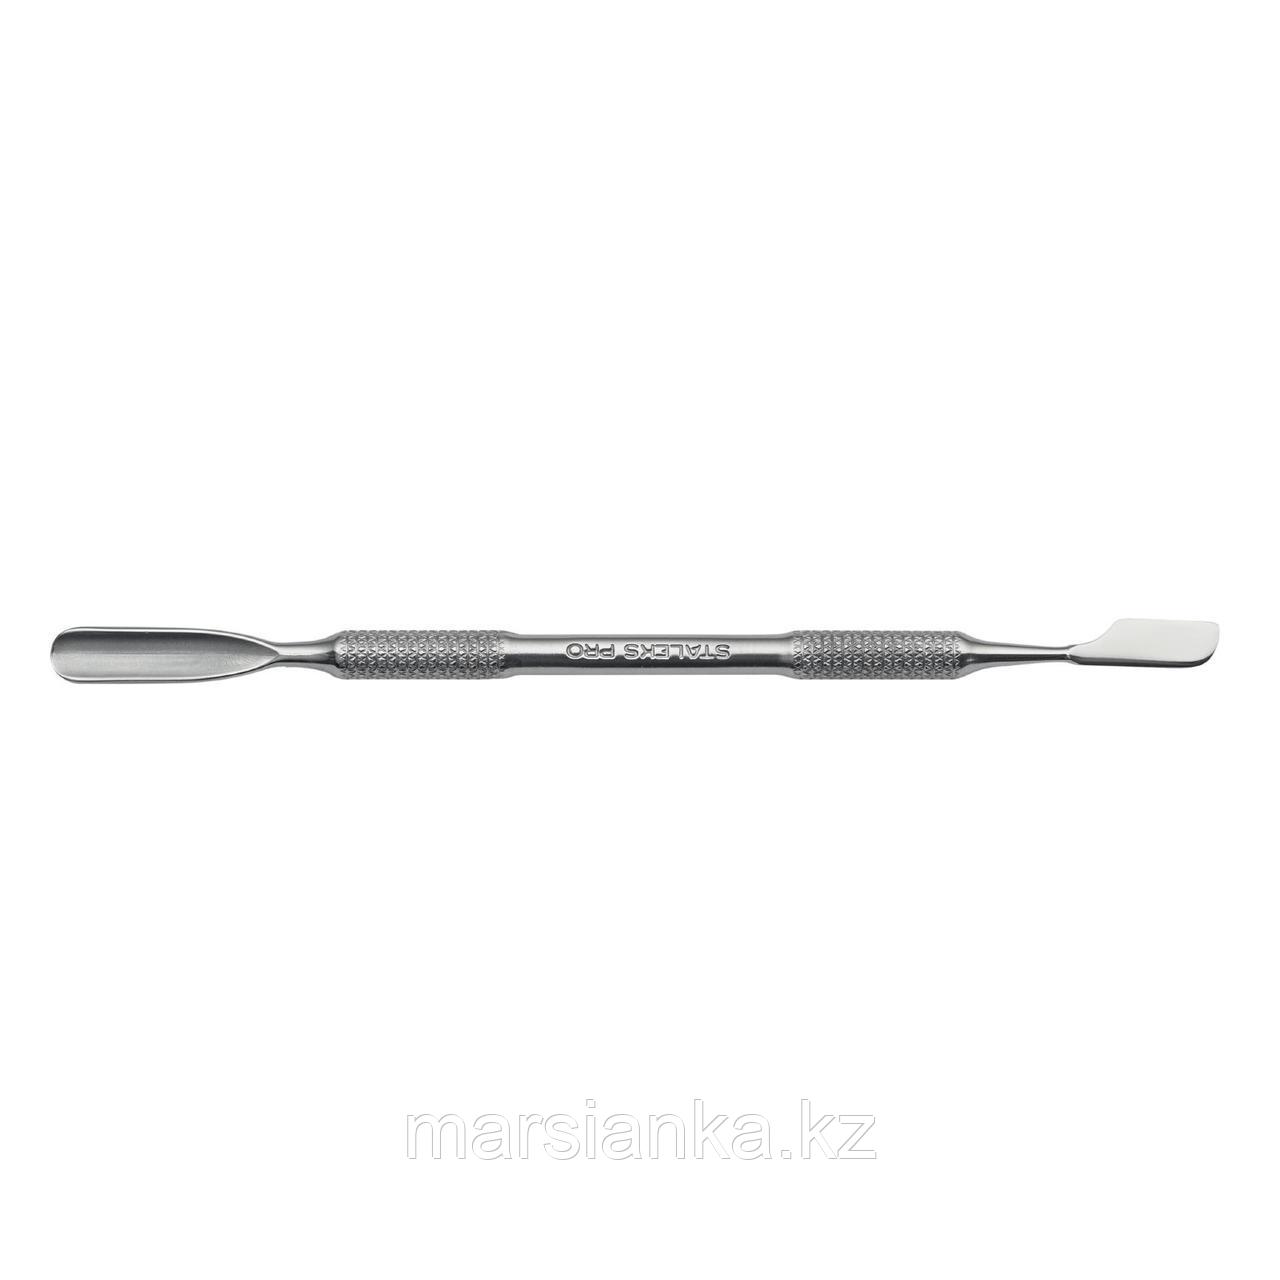 P7-10-05 Лопатка маникюрная Staleks (скругленный пушер+топорик)